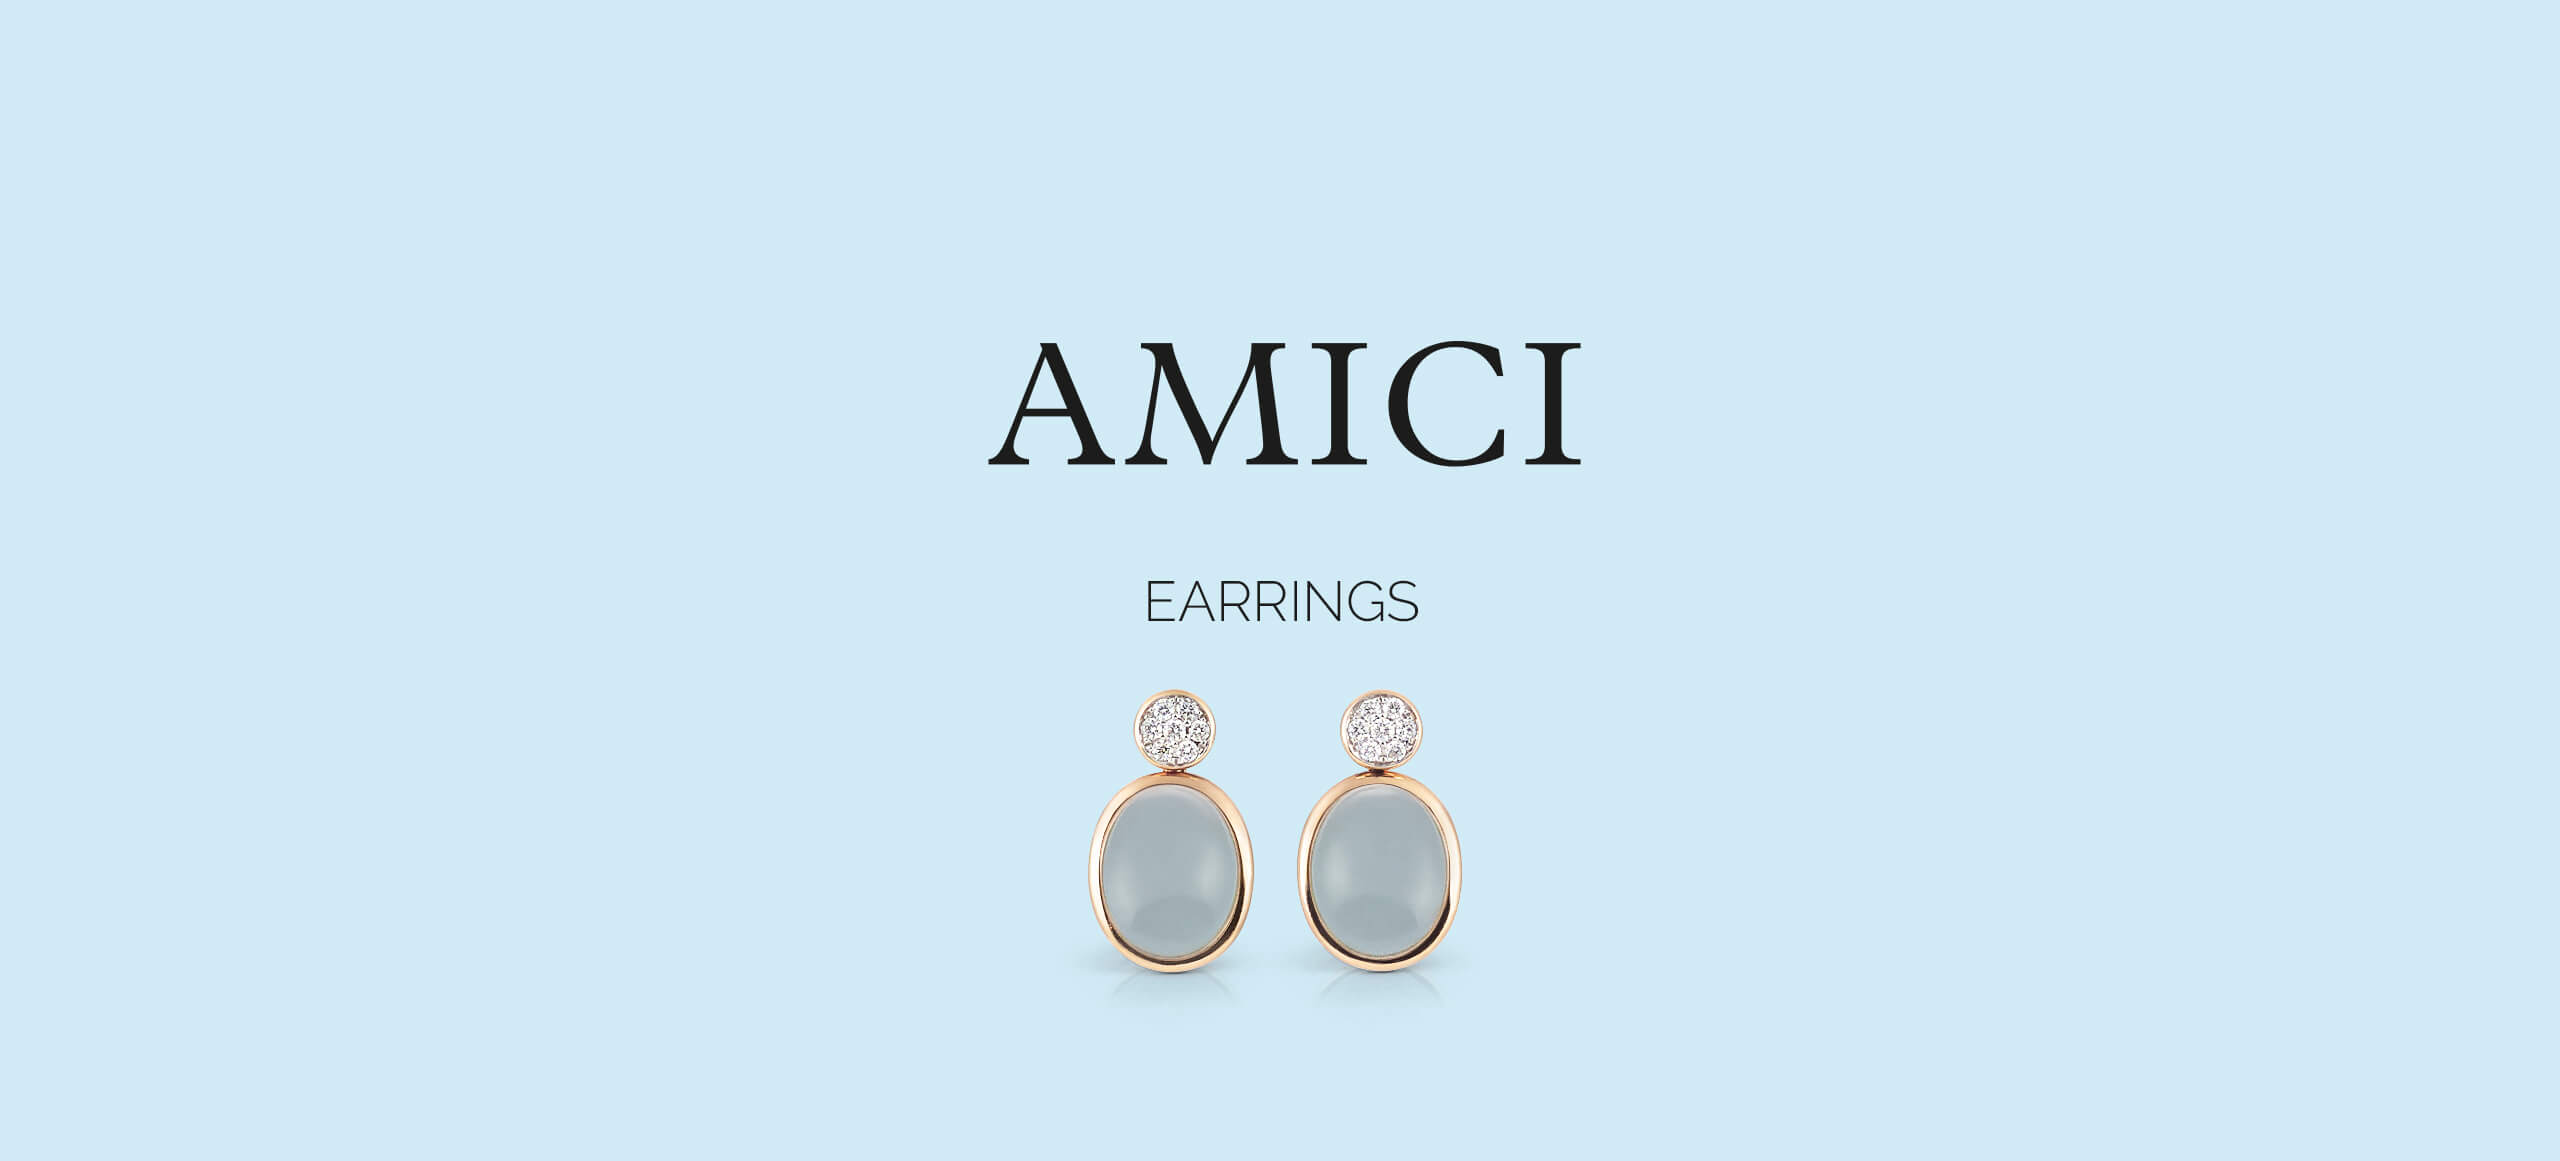 AMICI_Earrings_2560_1161